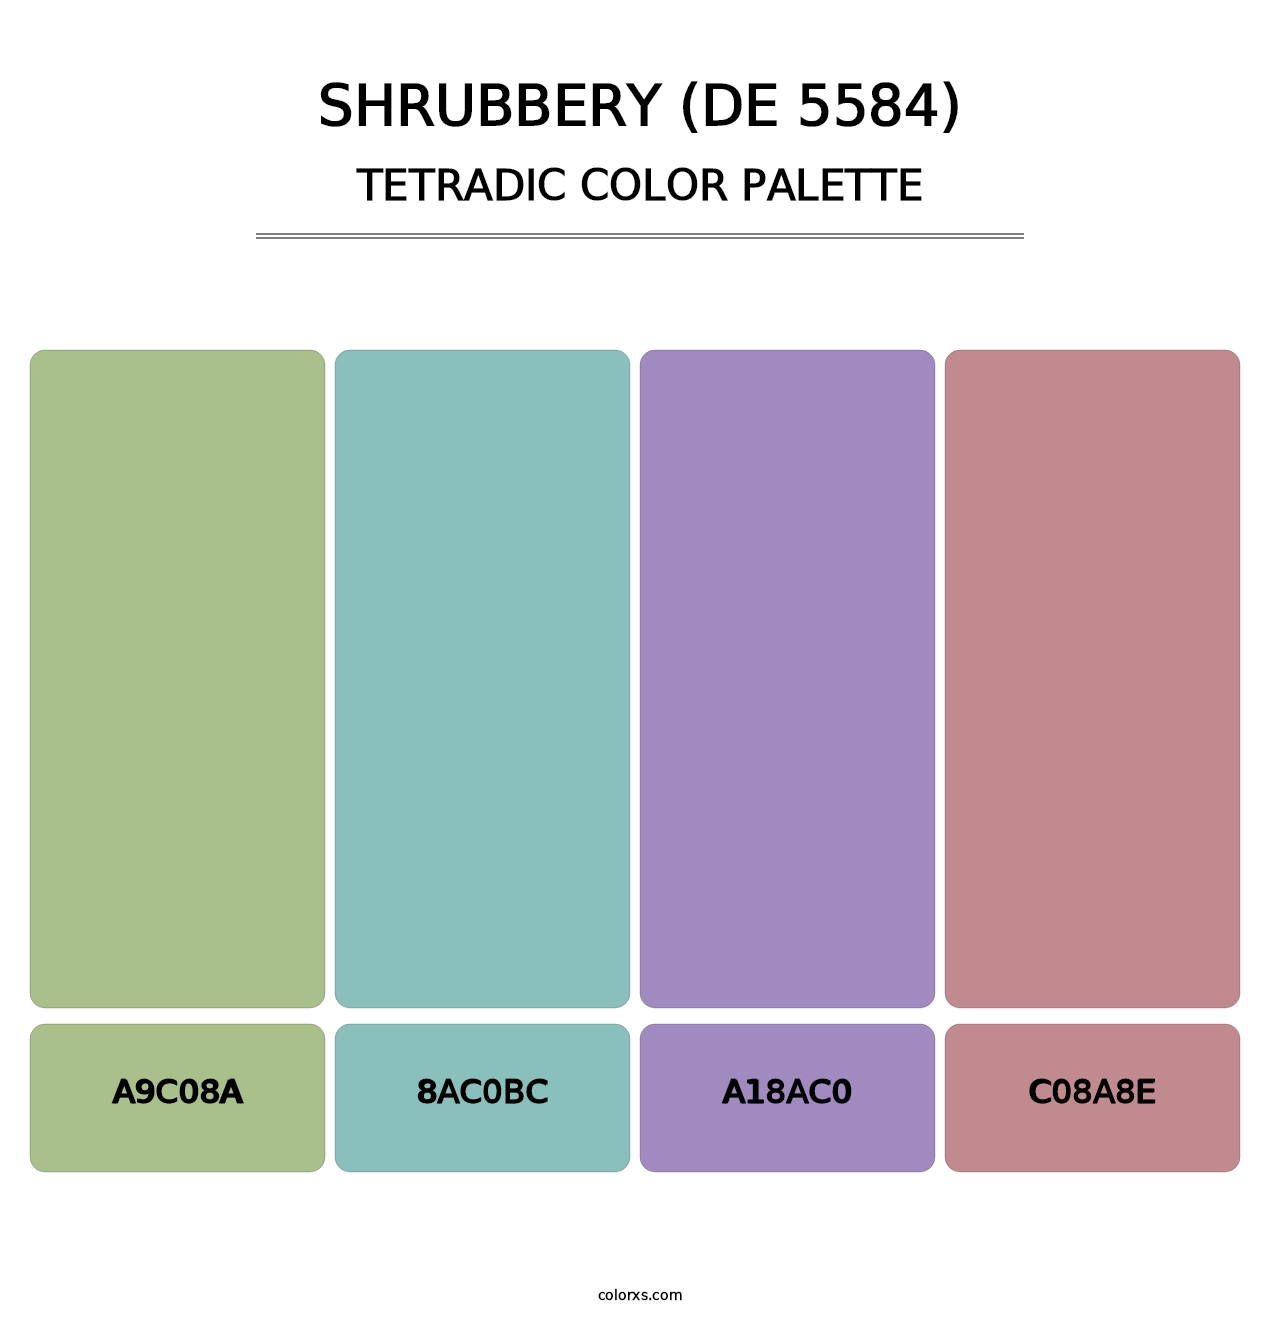 Shrubbery (DE 5584) - Tetradic Color Palette